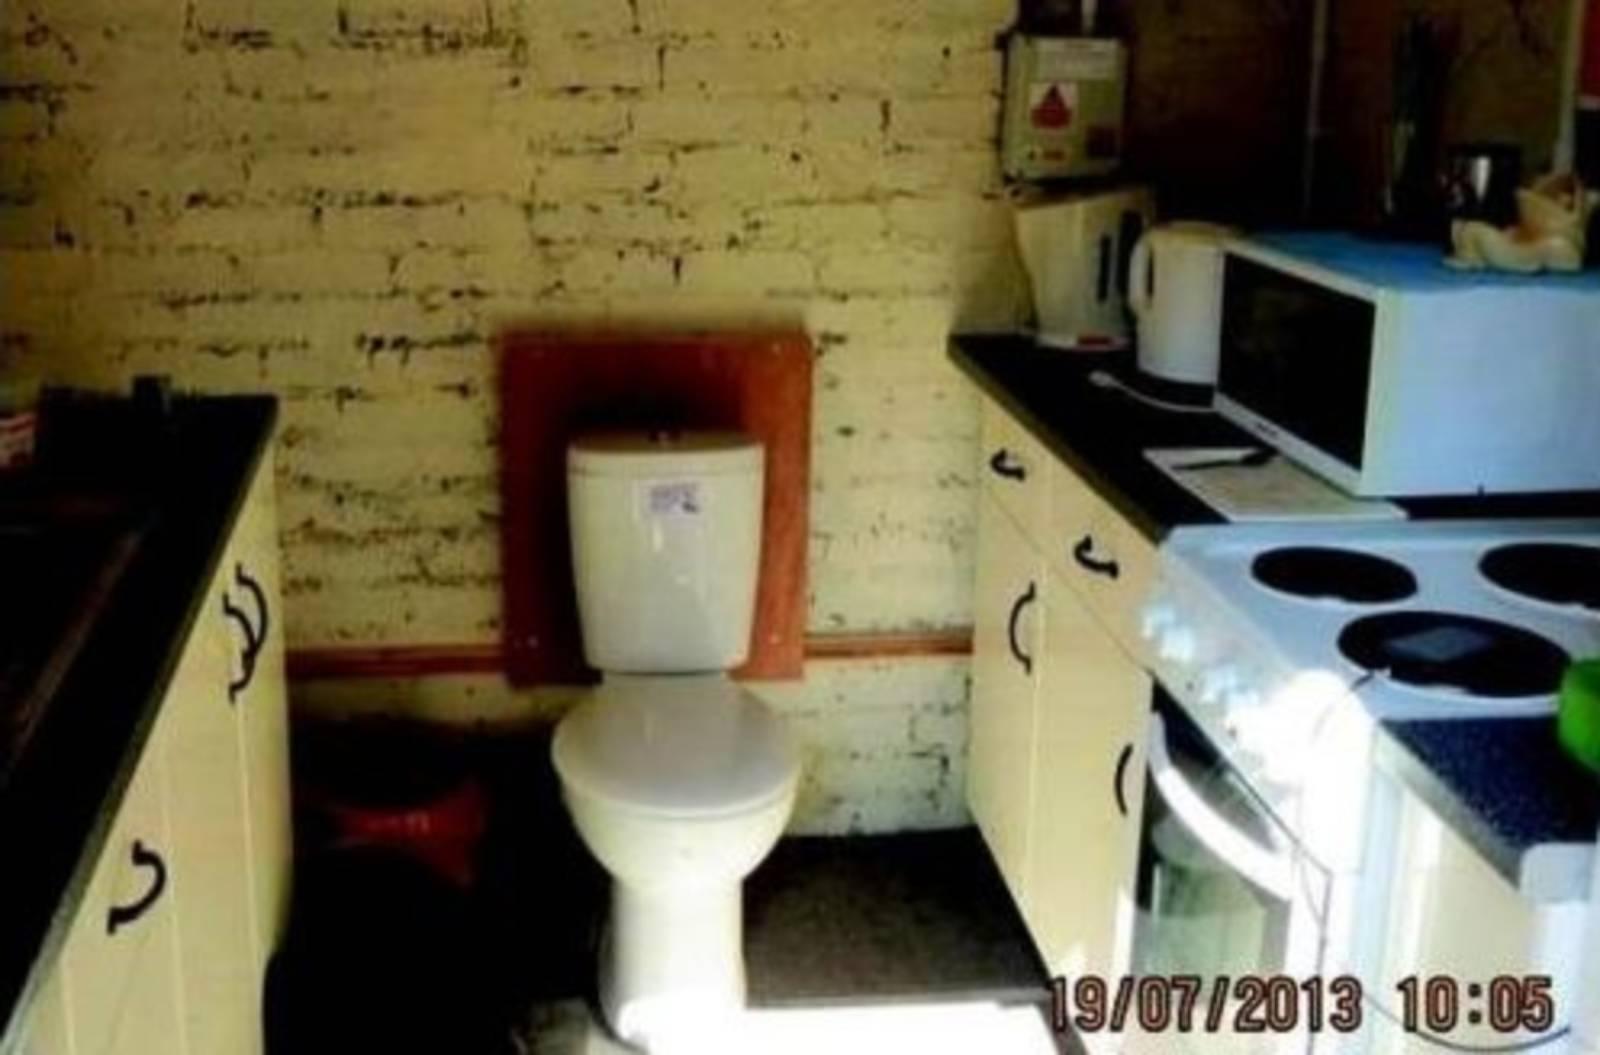 Toilet in Kitchen?